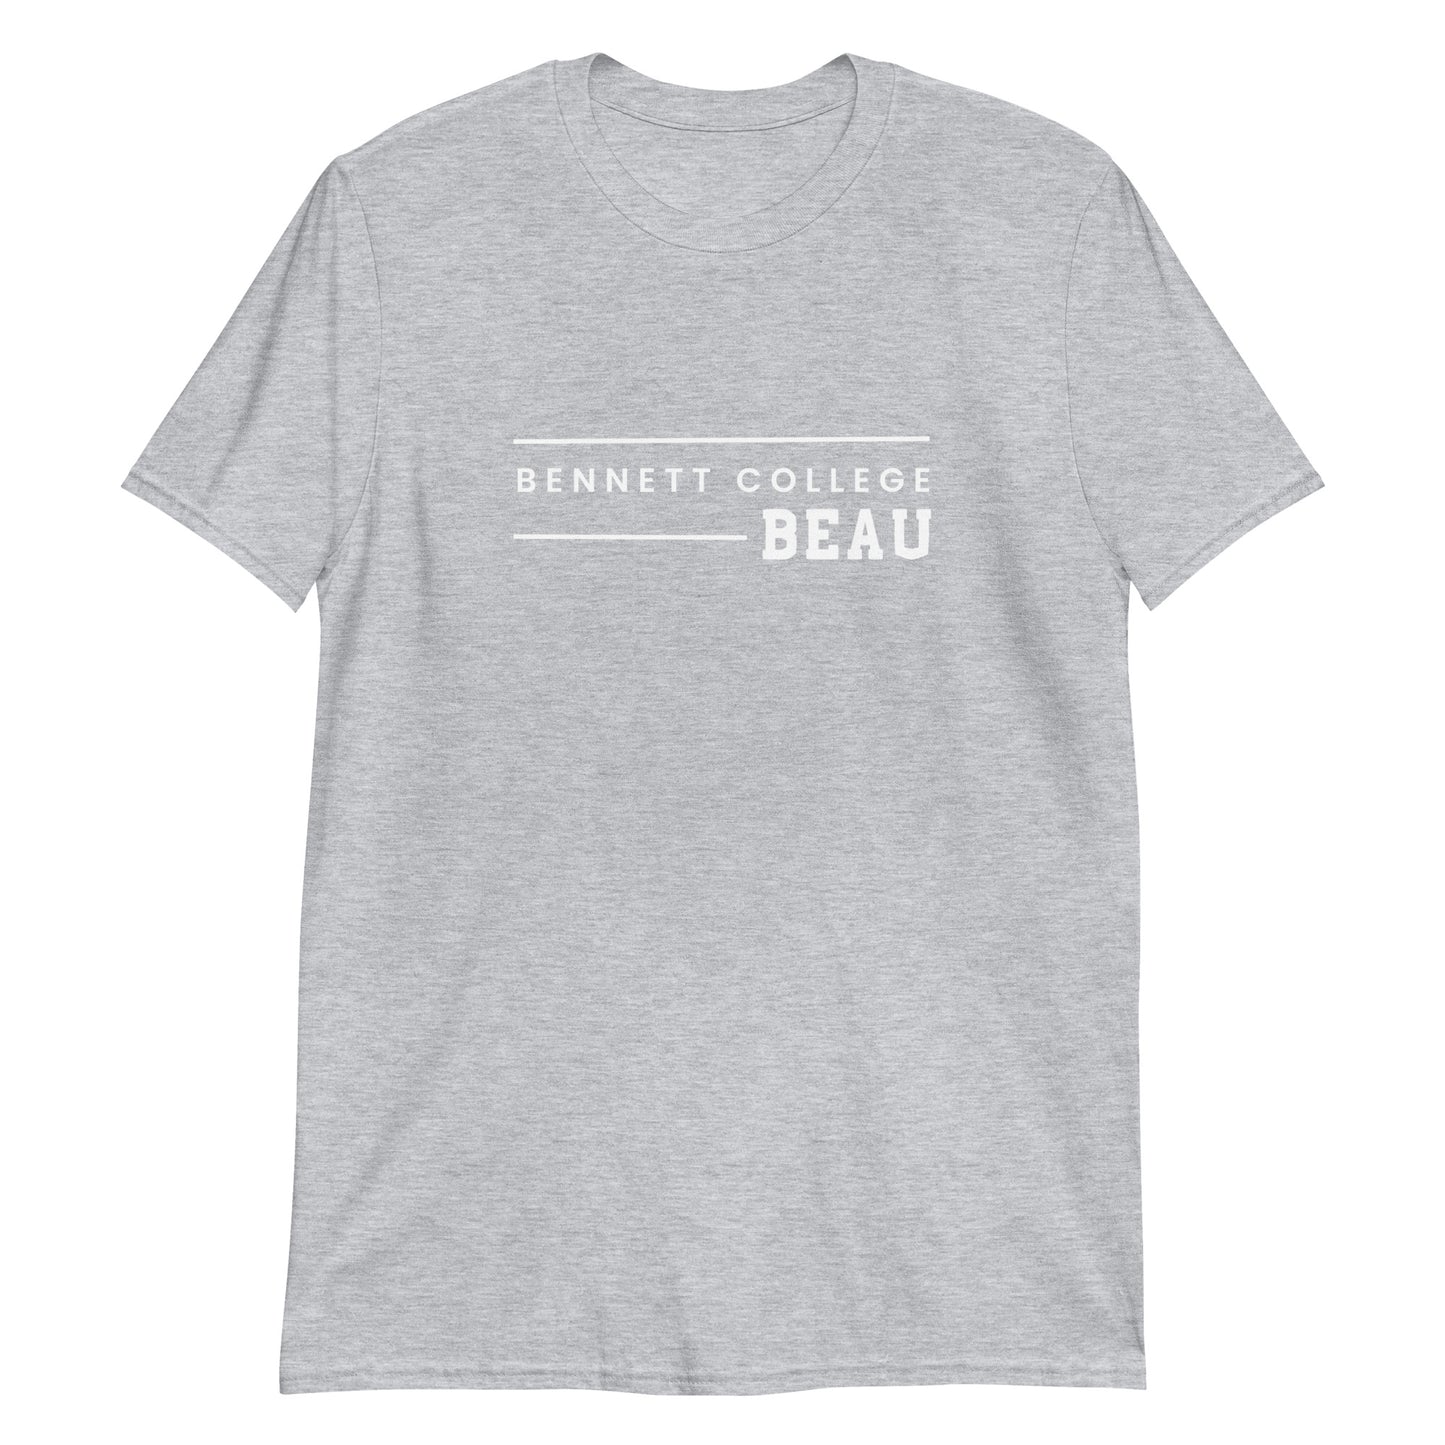 Bennett College Beau Short-Sleeve Unisex T-Shirt